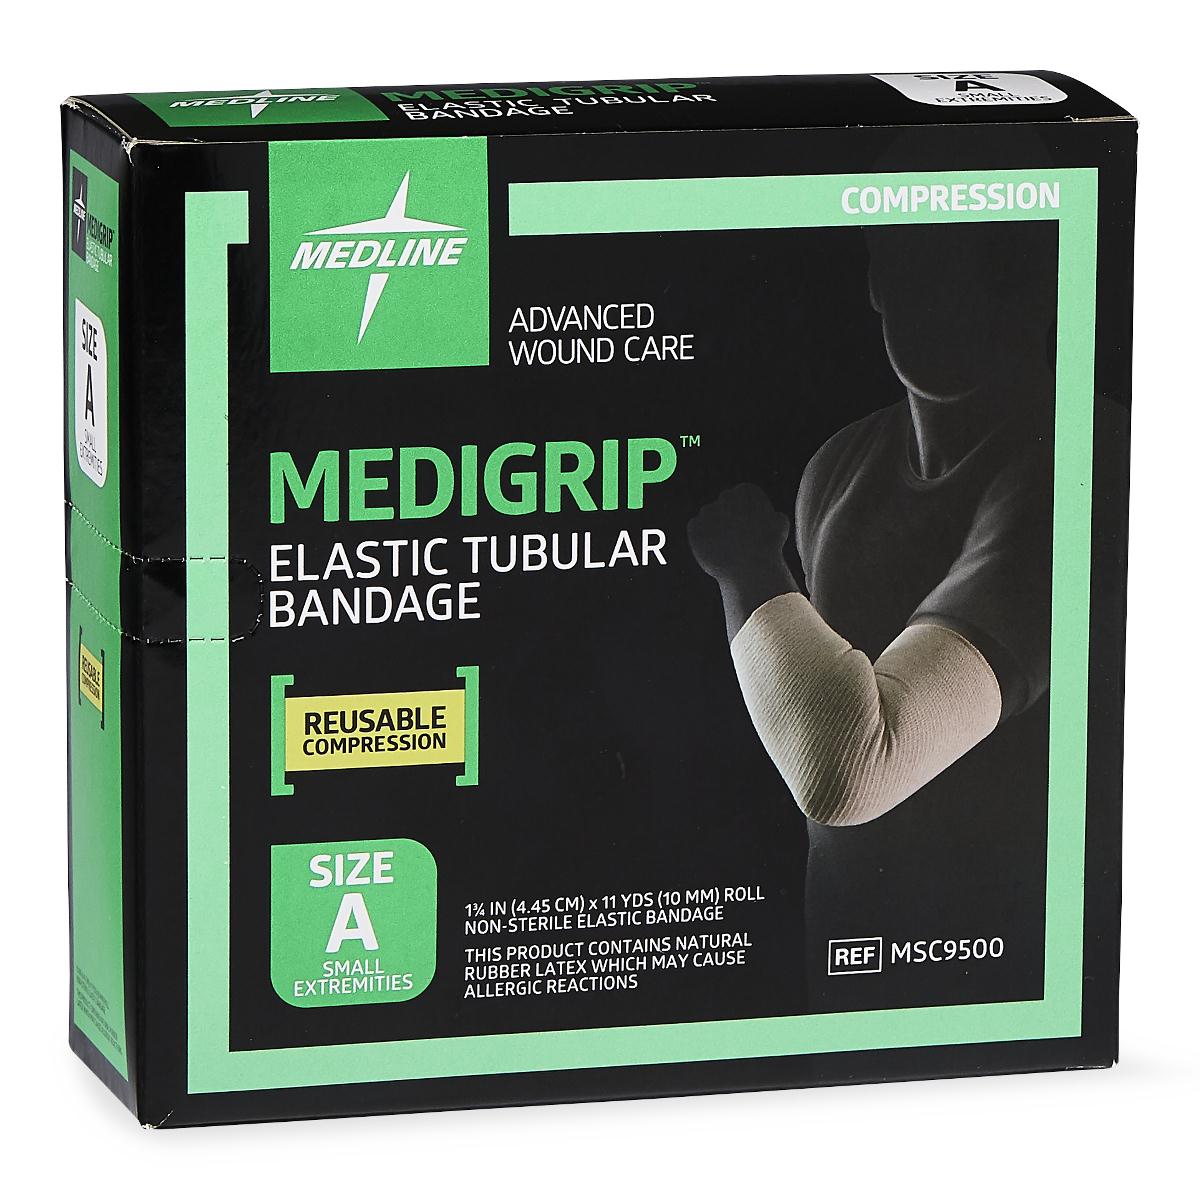 Medigrip Elastic Tubular Support Bandage,A Box of 1